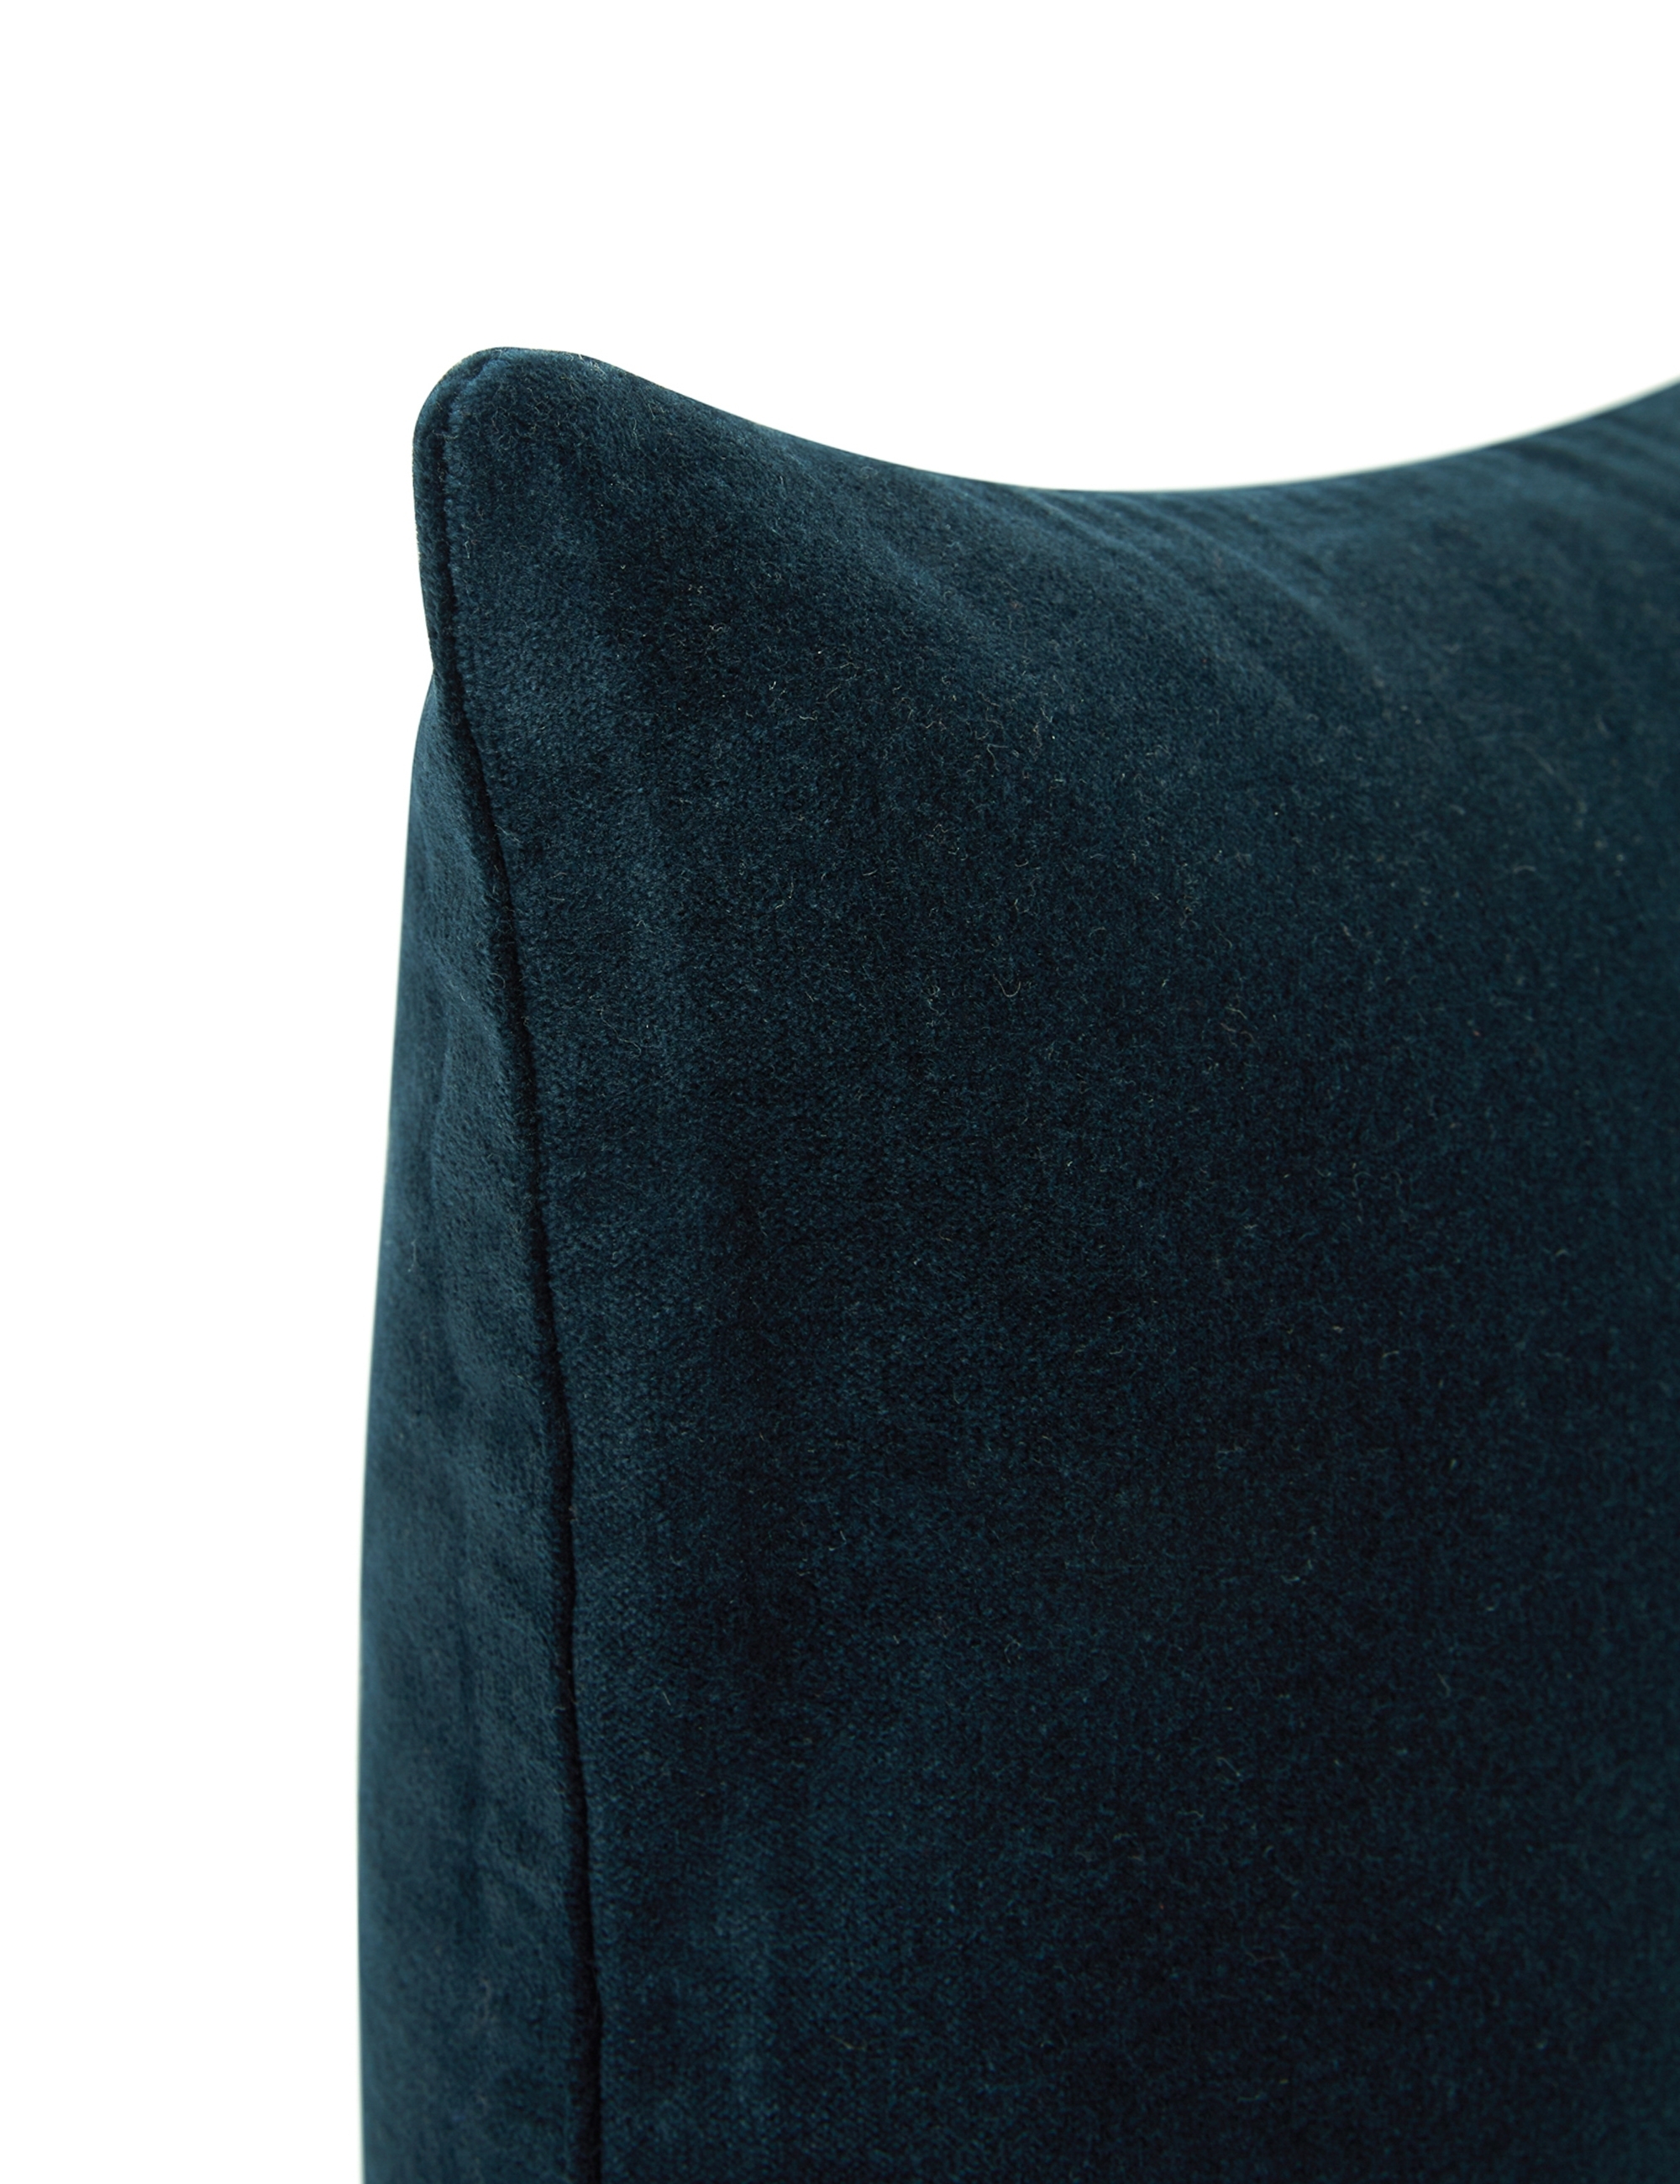 Charlotte Velvet Lumbar Pillow, Navy - Image 3